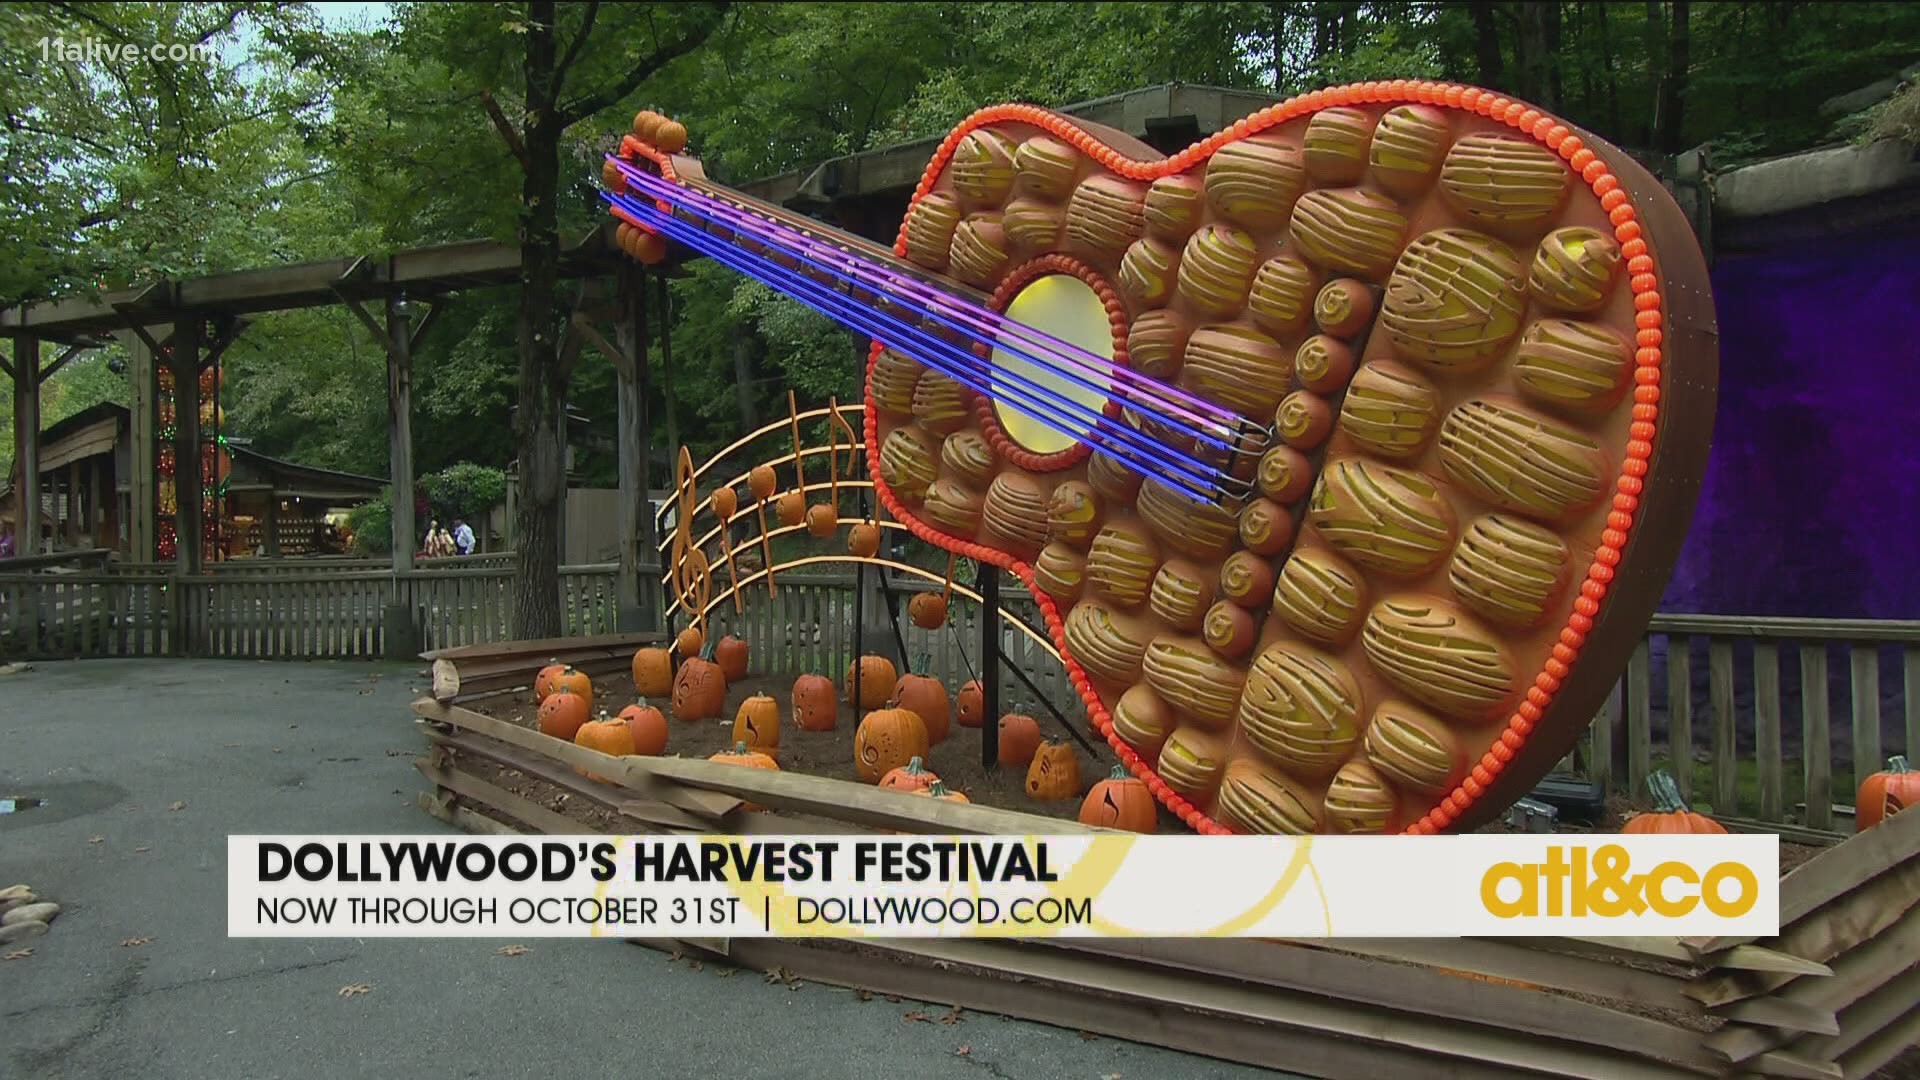 Dollywood's Harvest Festival